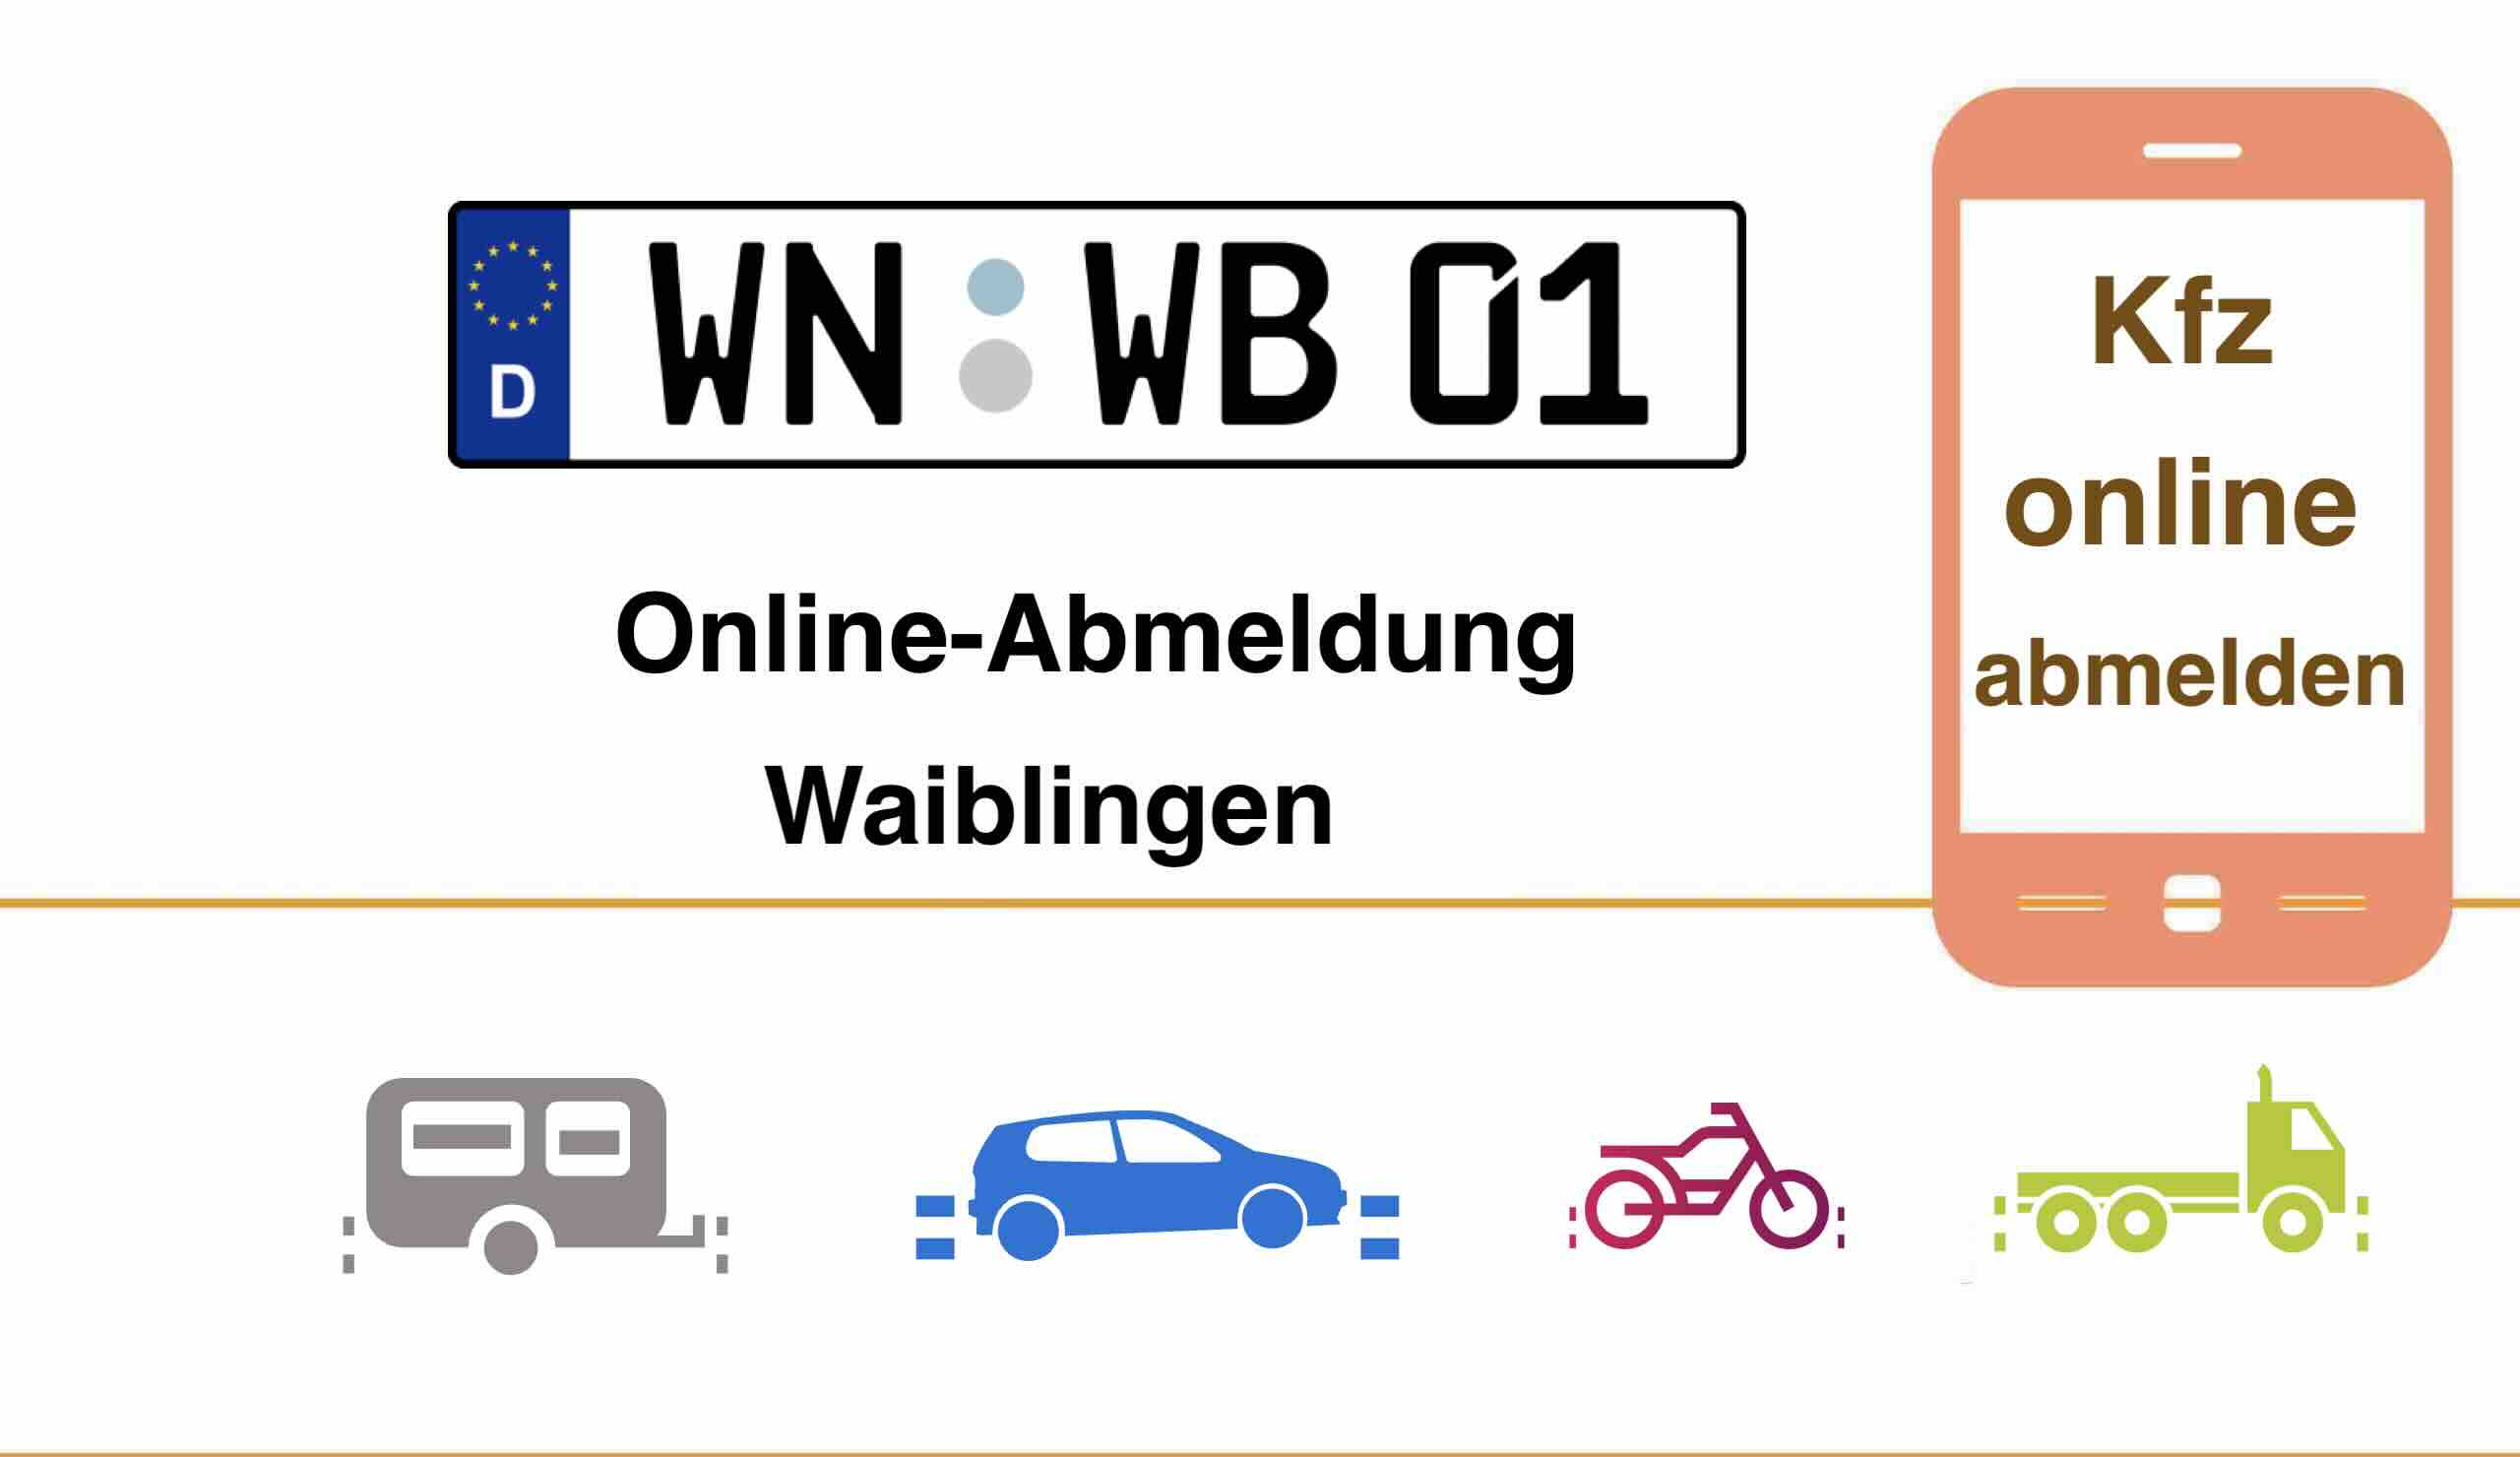 Kfz Online-Abmeldung in Waiblingen 